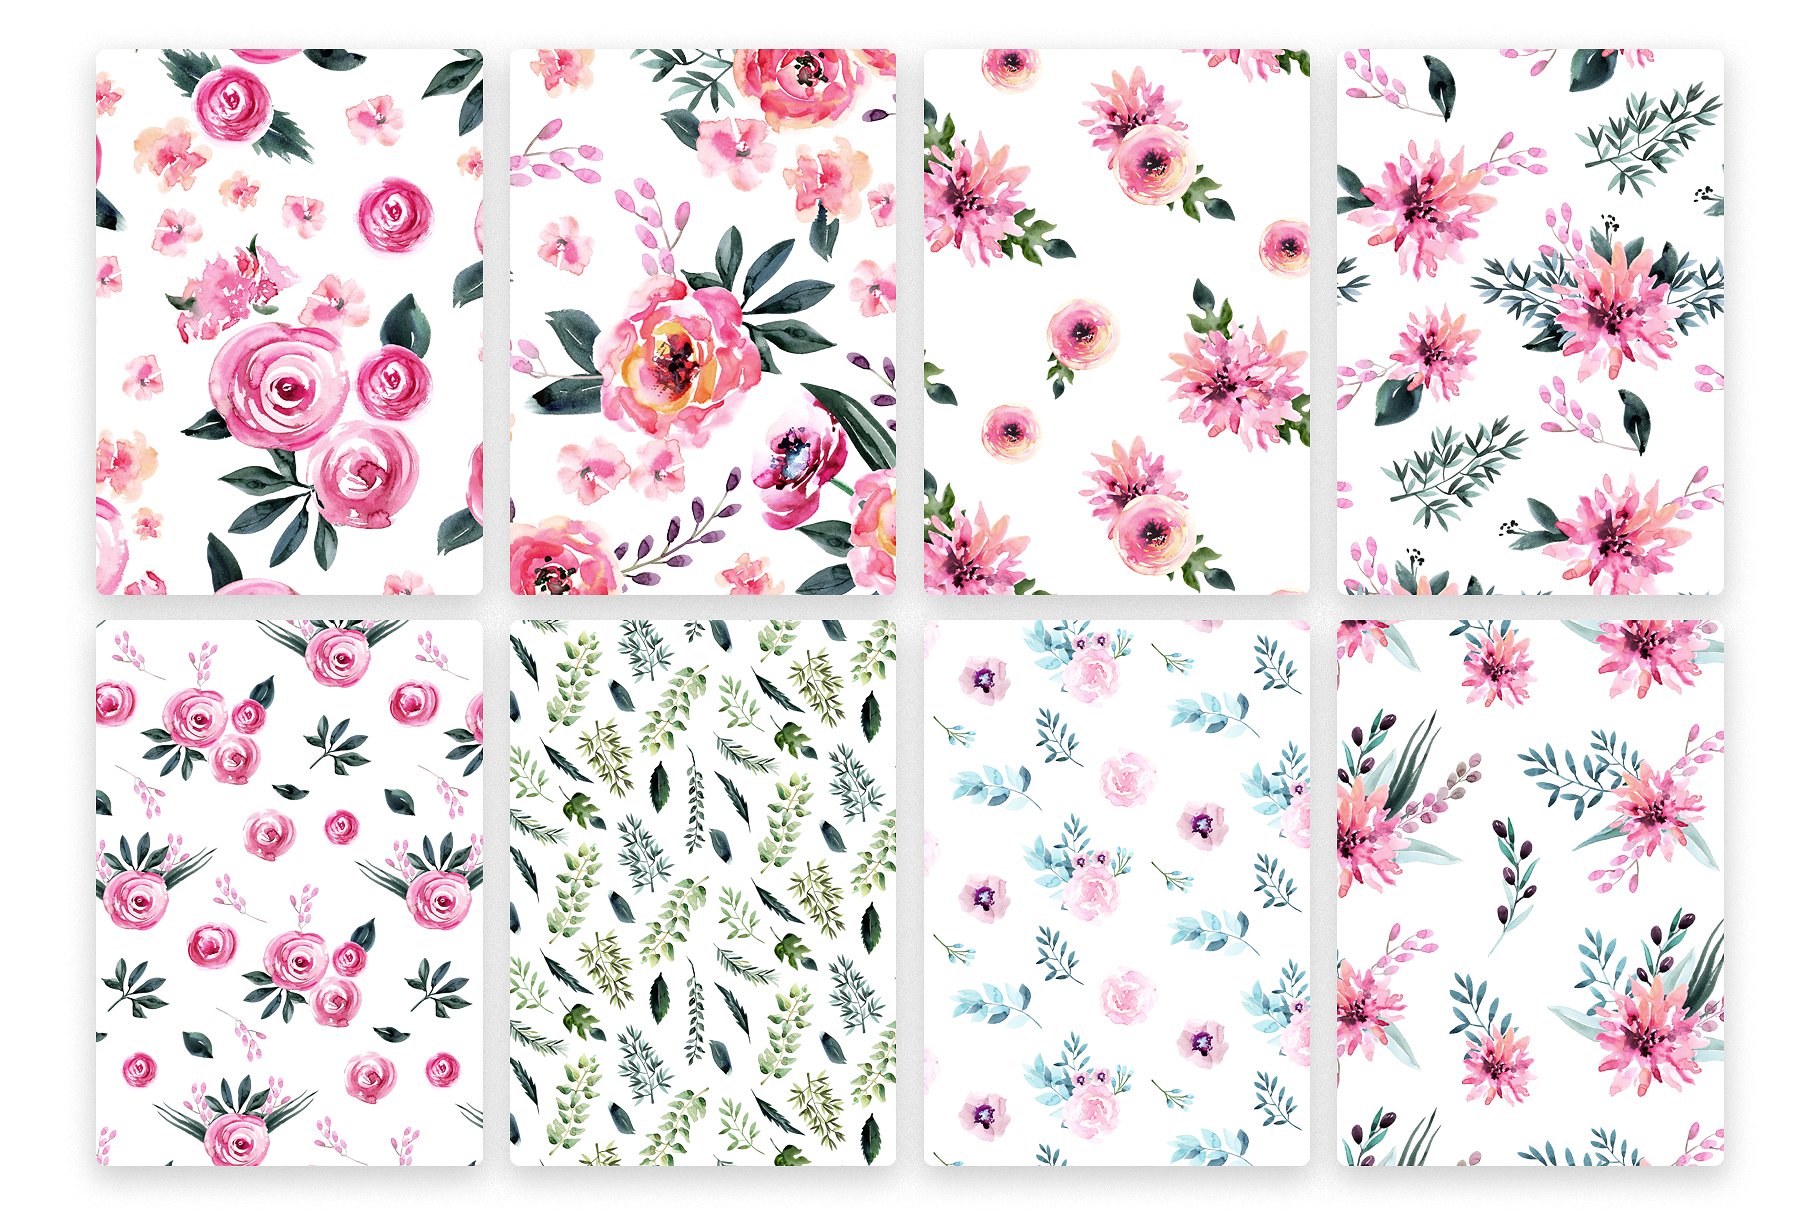 极力推荐：花卉图案纹理集合 Floral Patterns Bundle Vol.2 [3.45GB, 超过120款图案]插图(24)